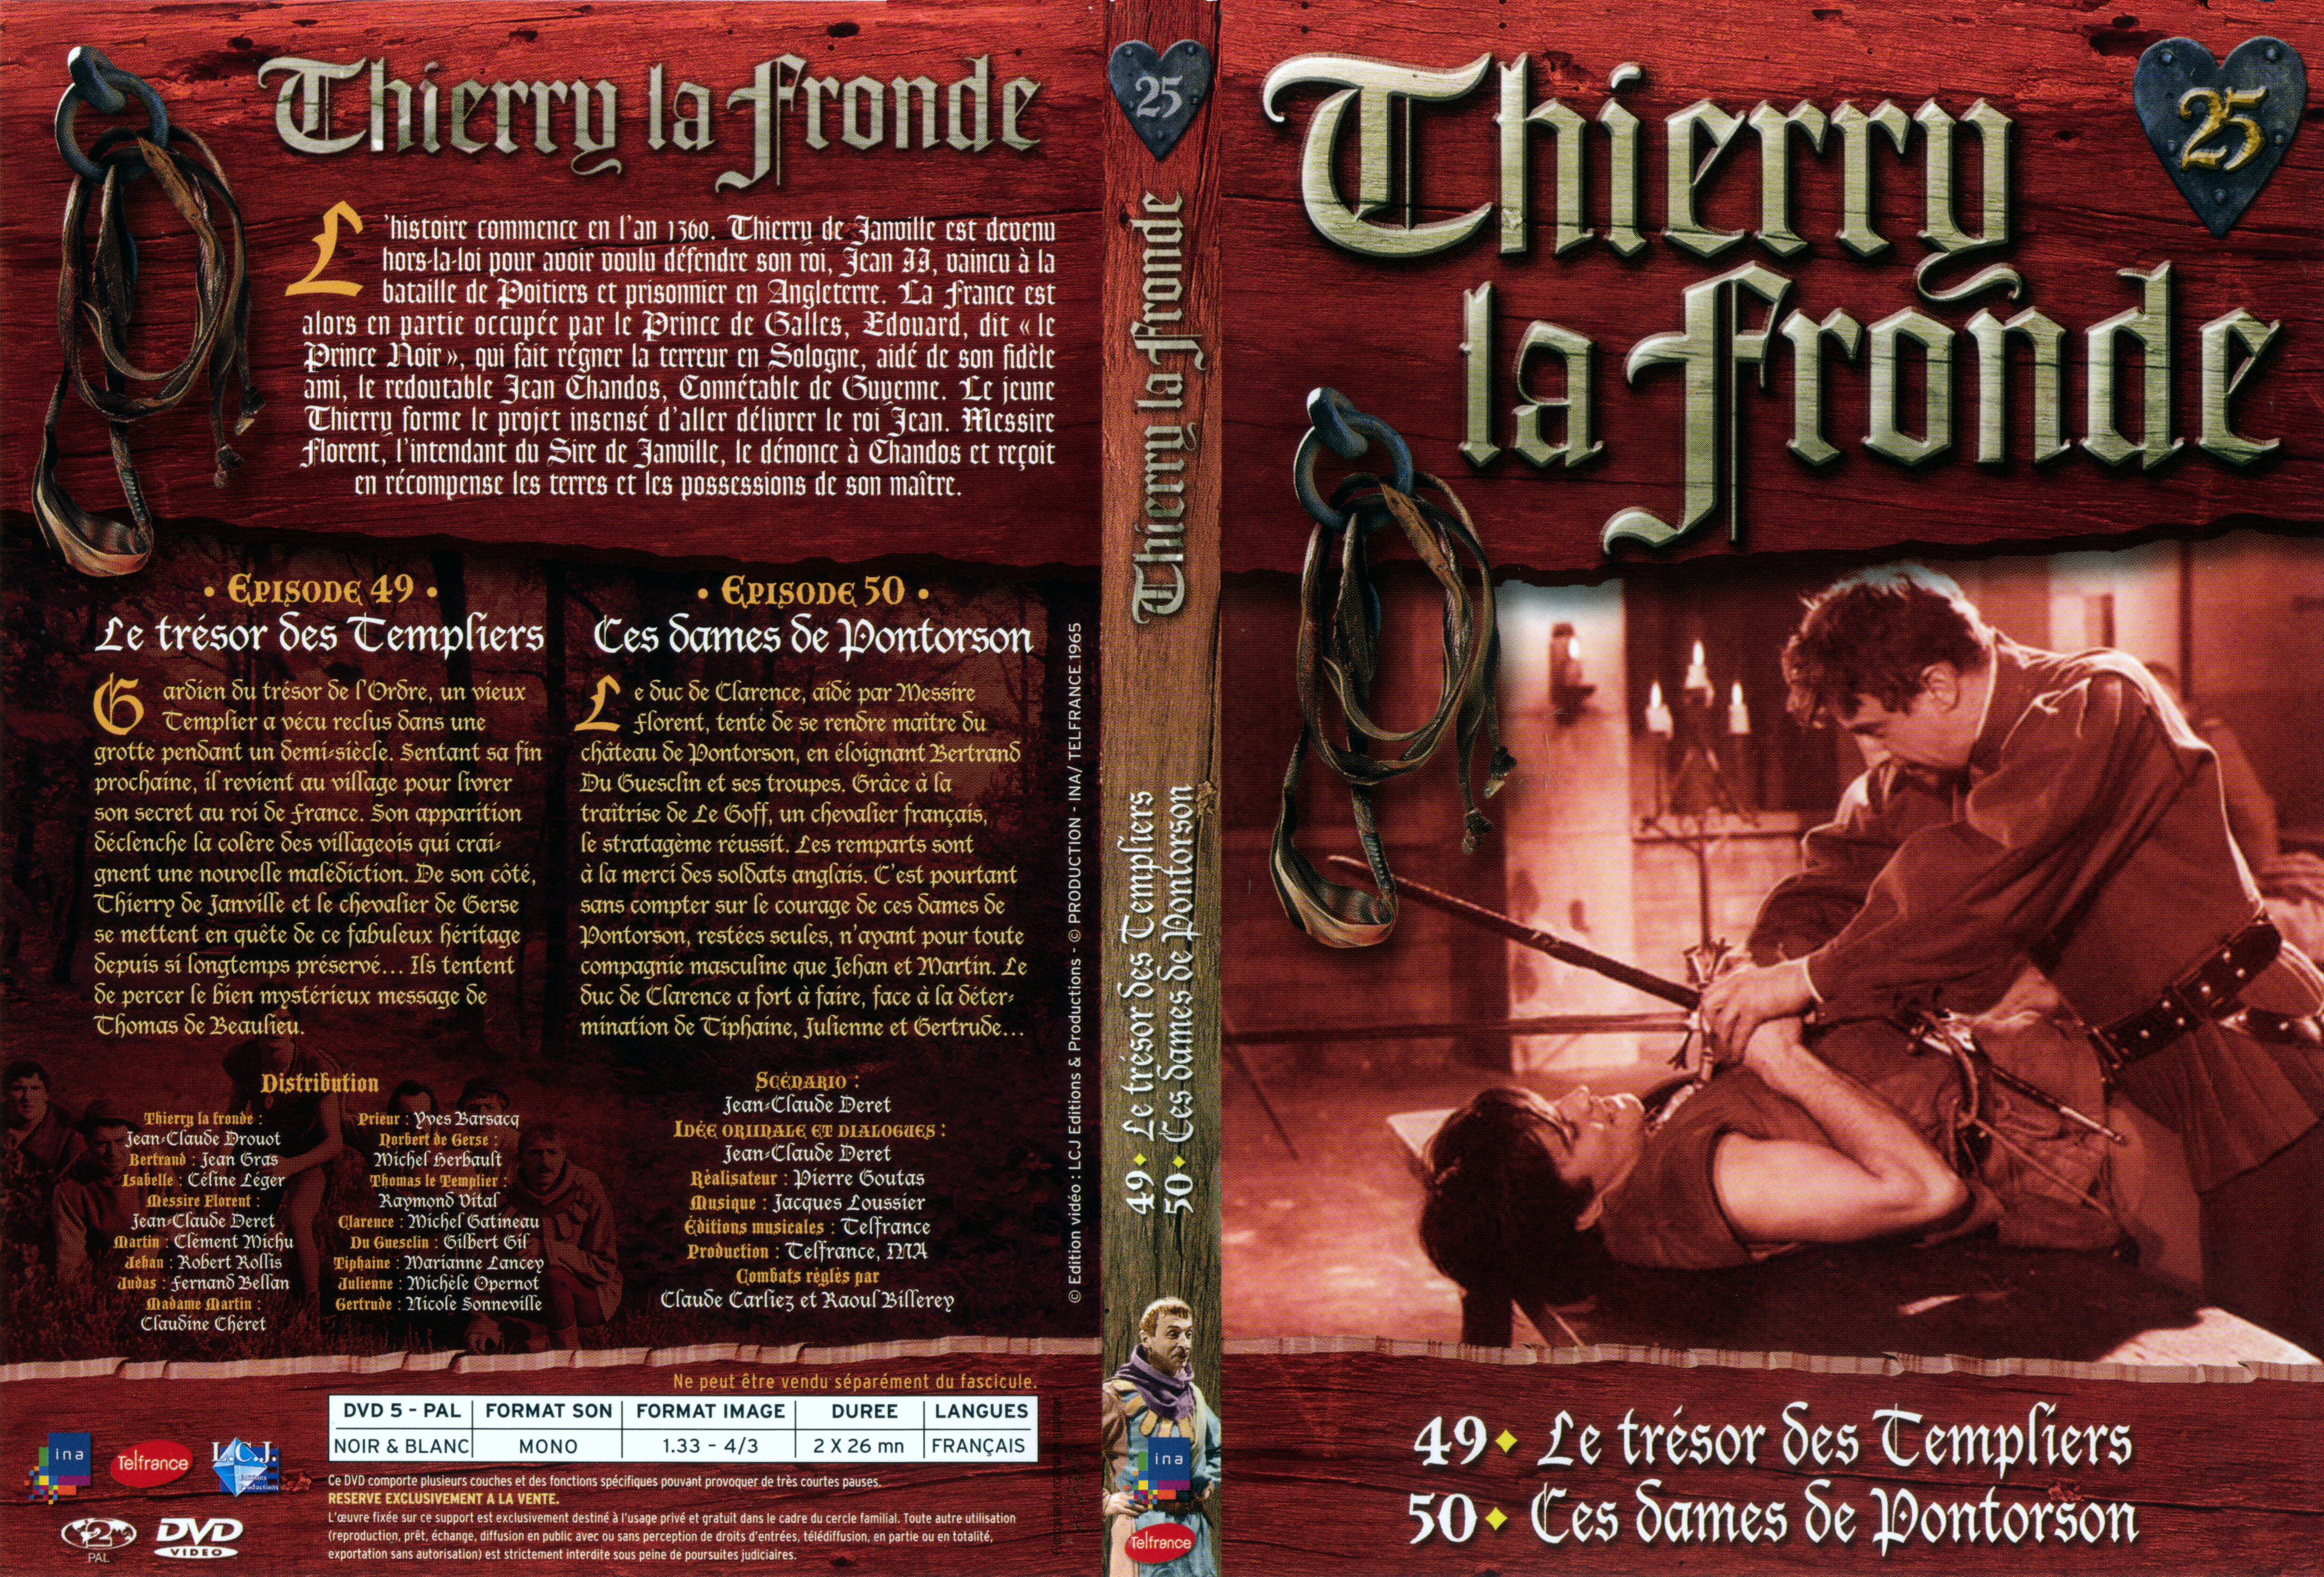 Jaquette DVD Thierry la Fronde vol 25